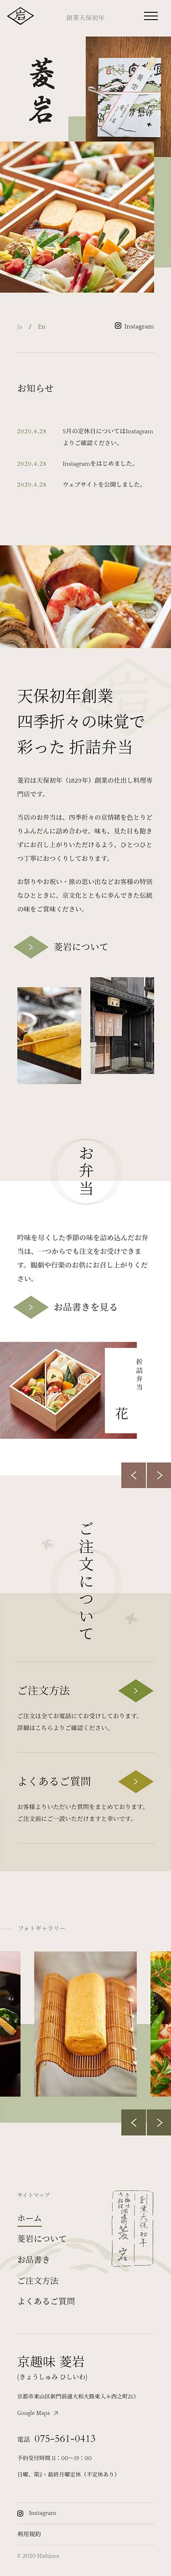 菱岩 - 天保初年創業 仕出し料理専門店